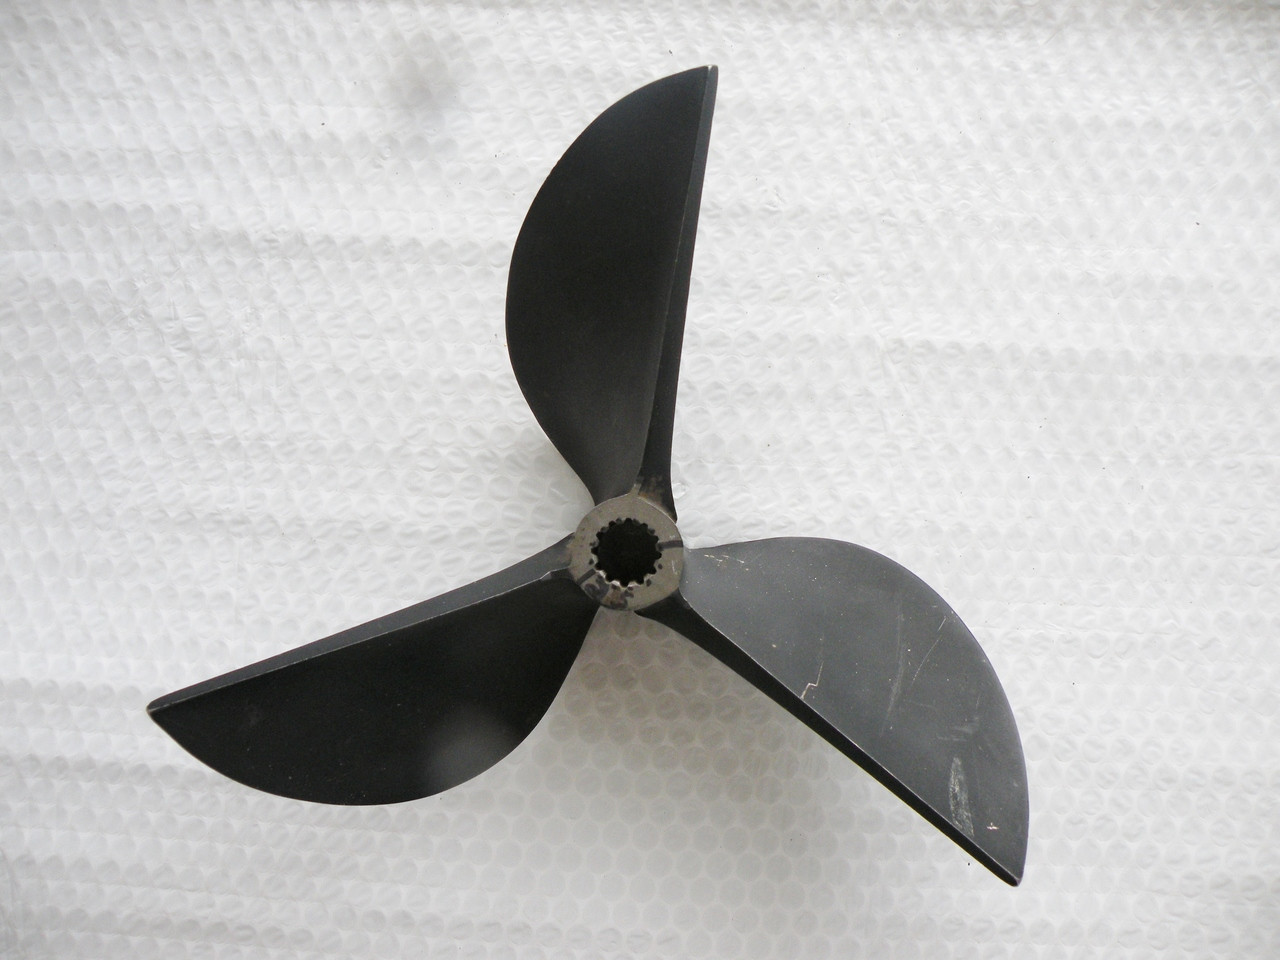 OMC Cleaver SST Racing propellers 